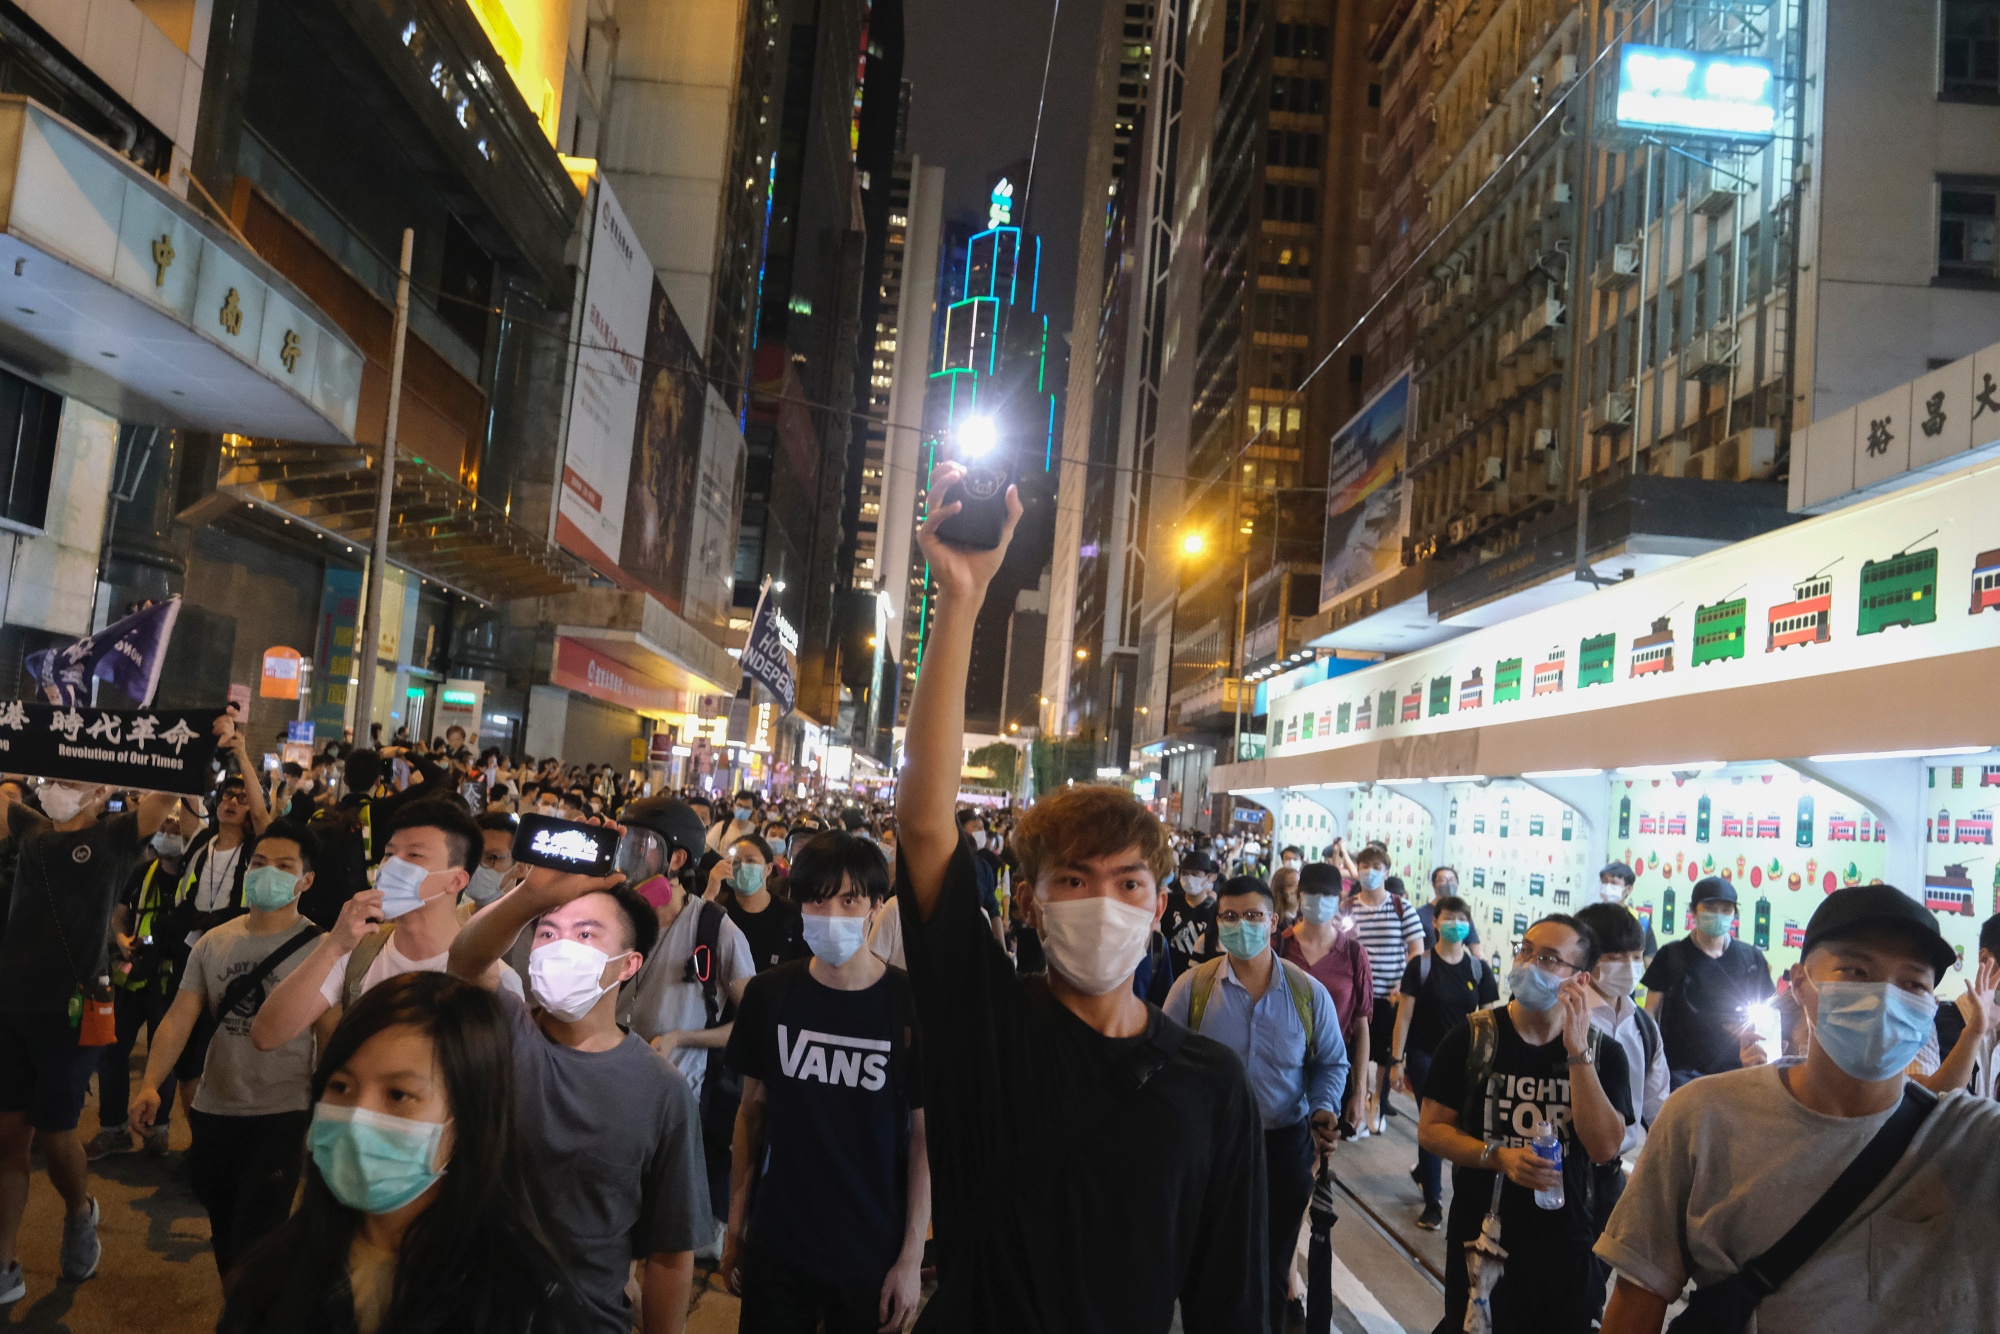 A demonstration on Des Voeux Road in Hong Kong, June 9.